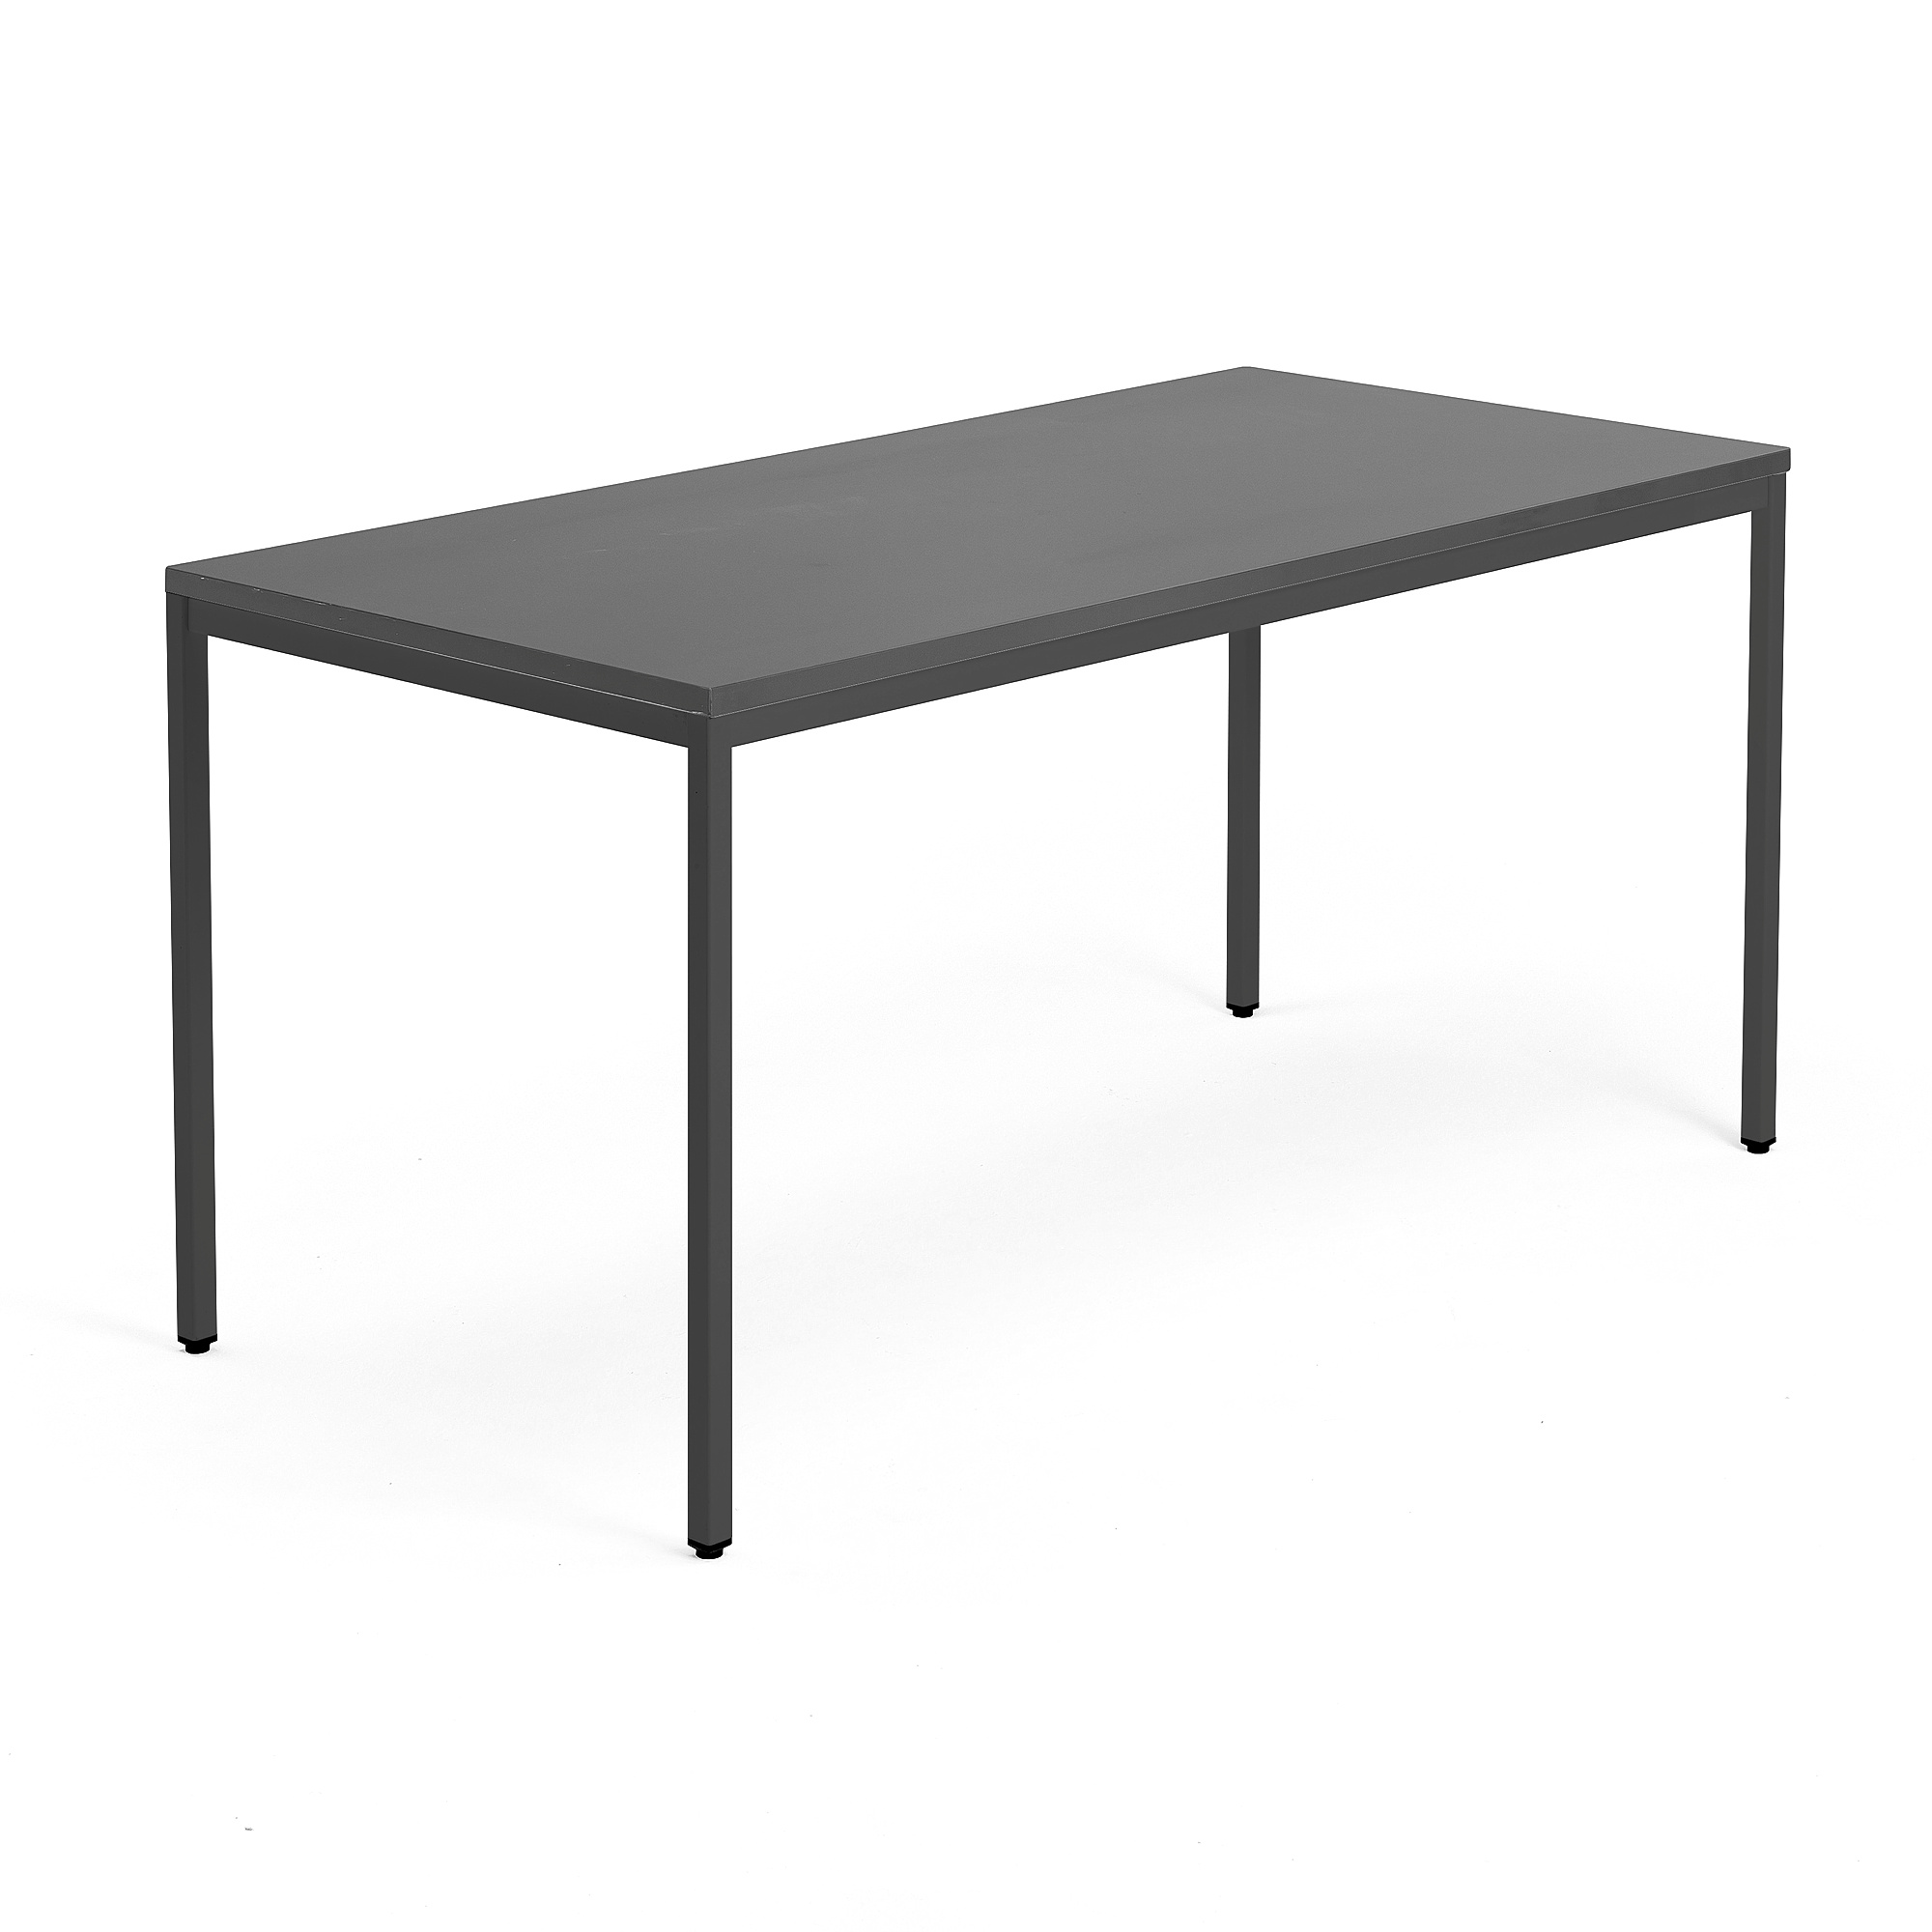 Jednací stůl QBUS, 4 nohy, 1600x800 mm, černý rám, černá